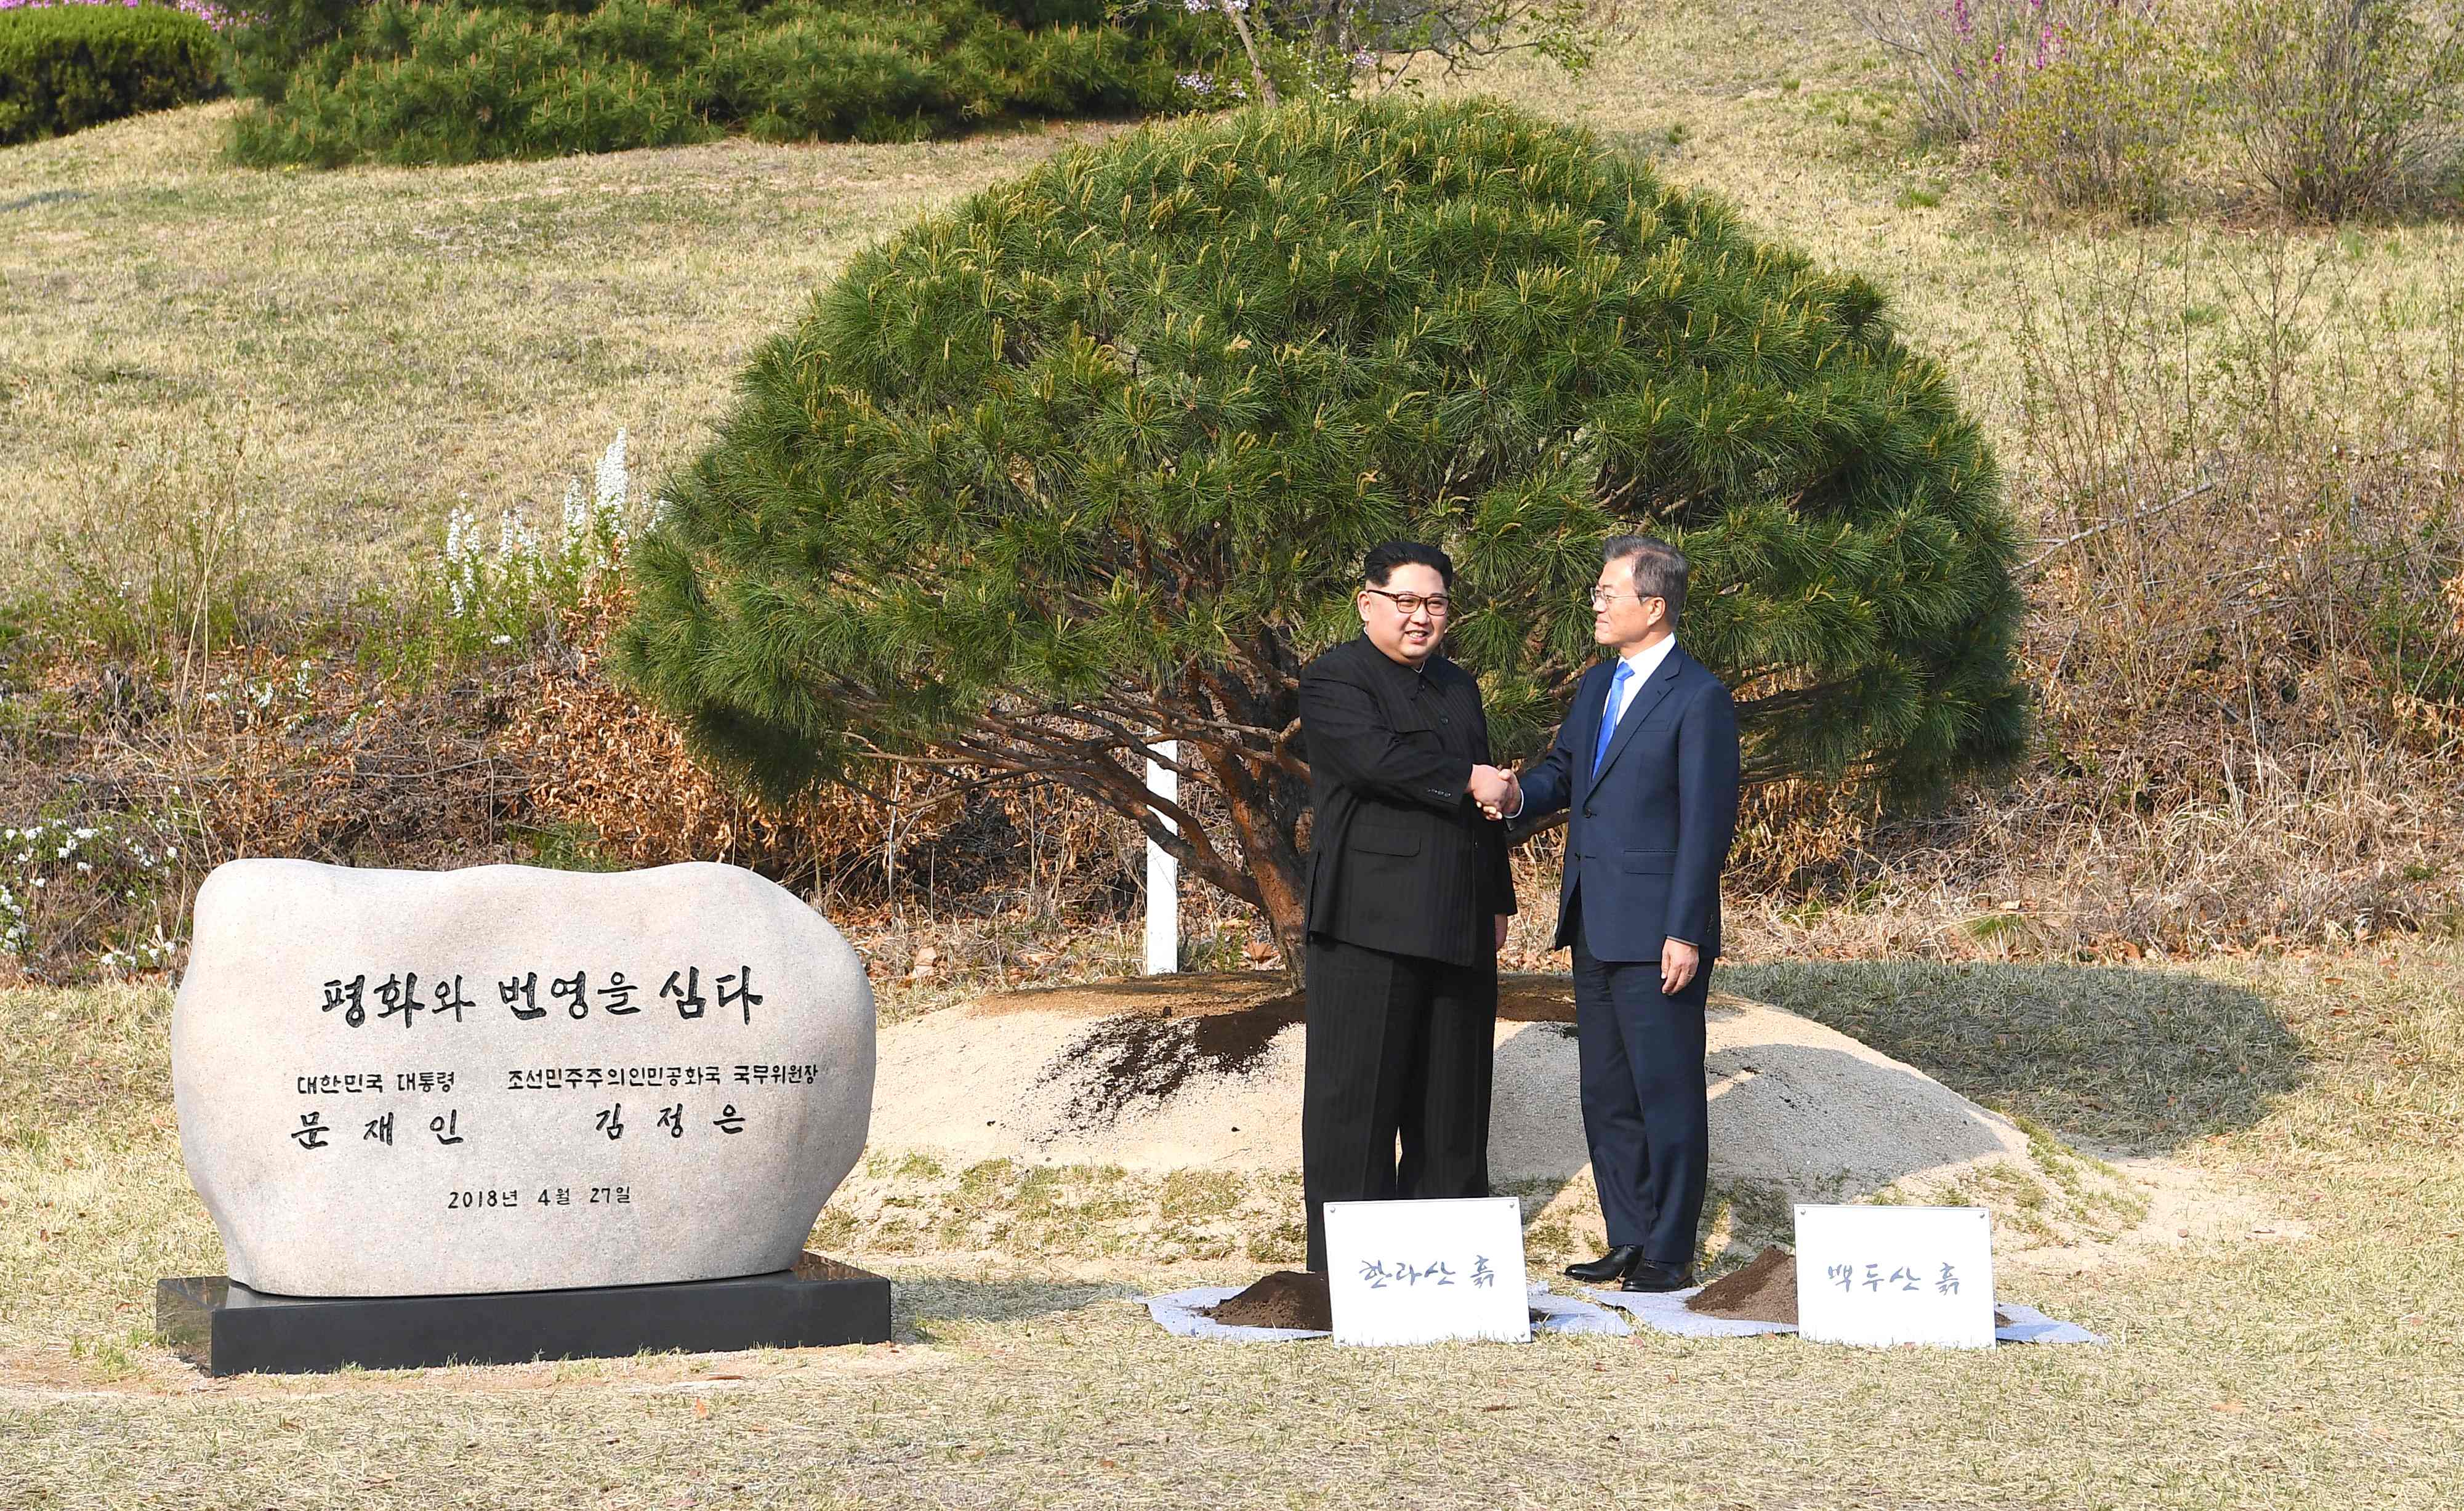 زعيم كوريا الشمالية ورئيس كوريا الجنوبية